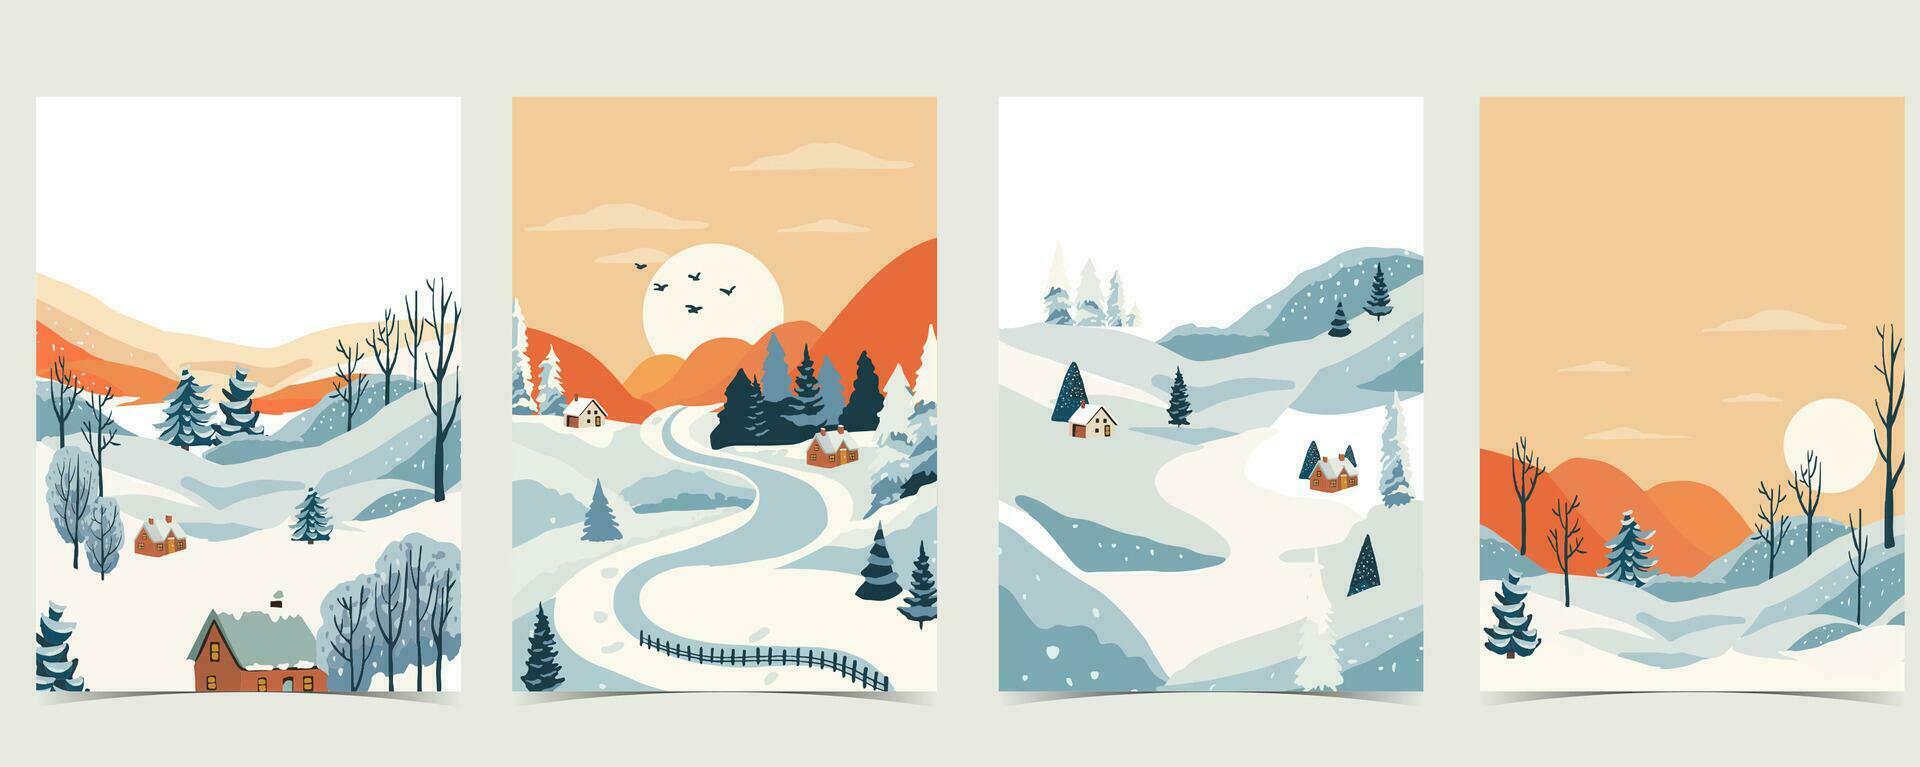 Winter Landschaft Hintergrund mit Berg, Baum.bearbeitbar Vektor Illustration zum Postkarte, A4 Vertikale Größe